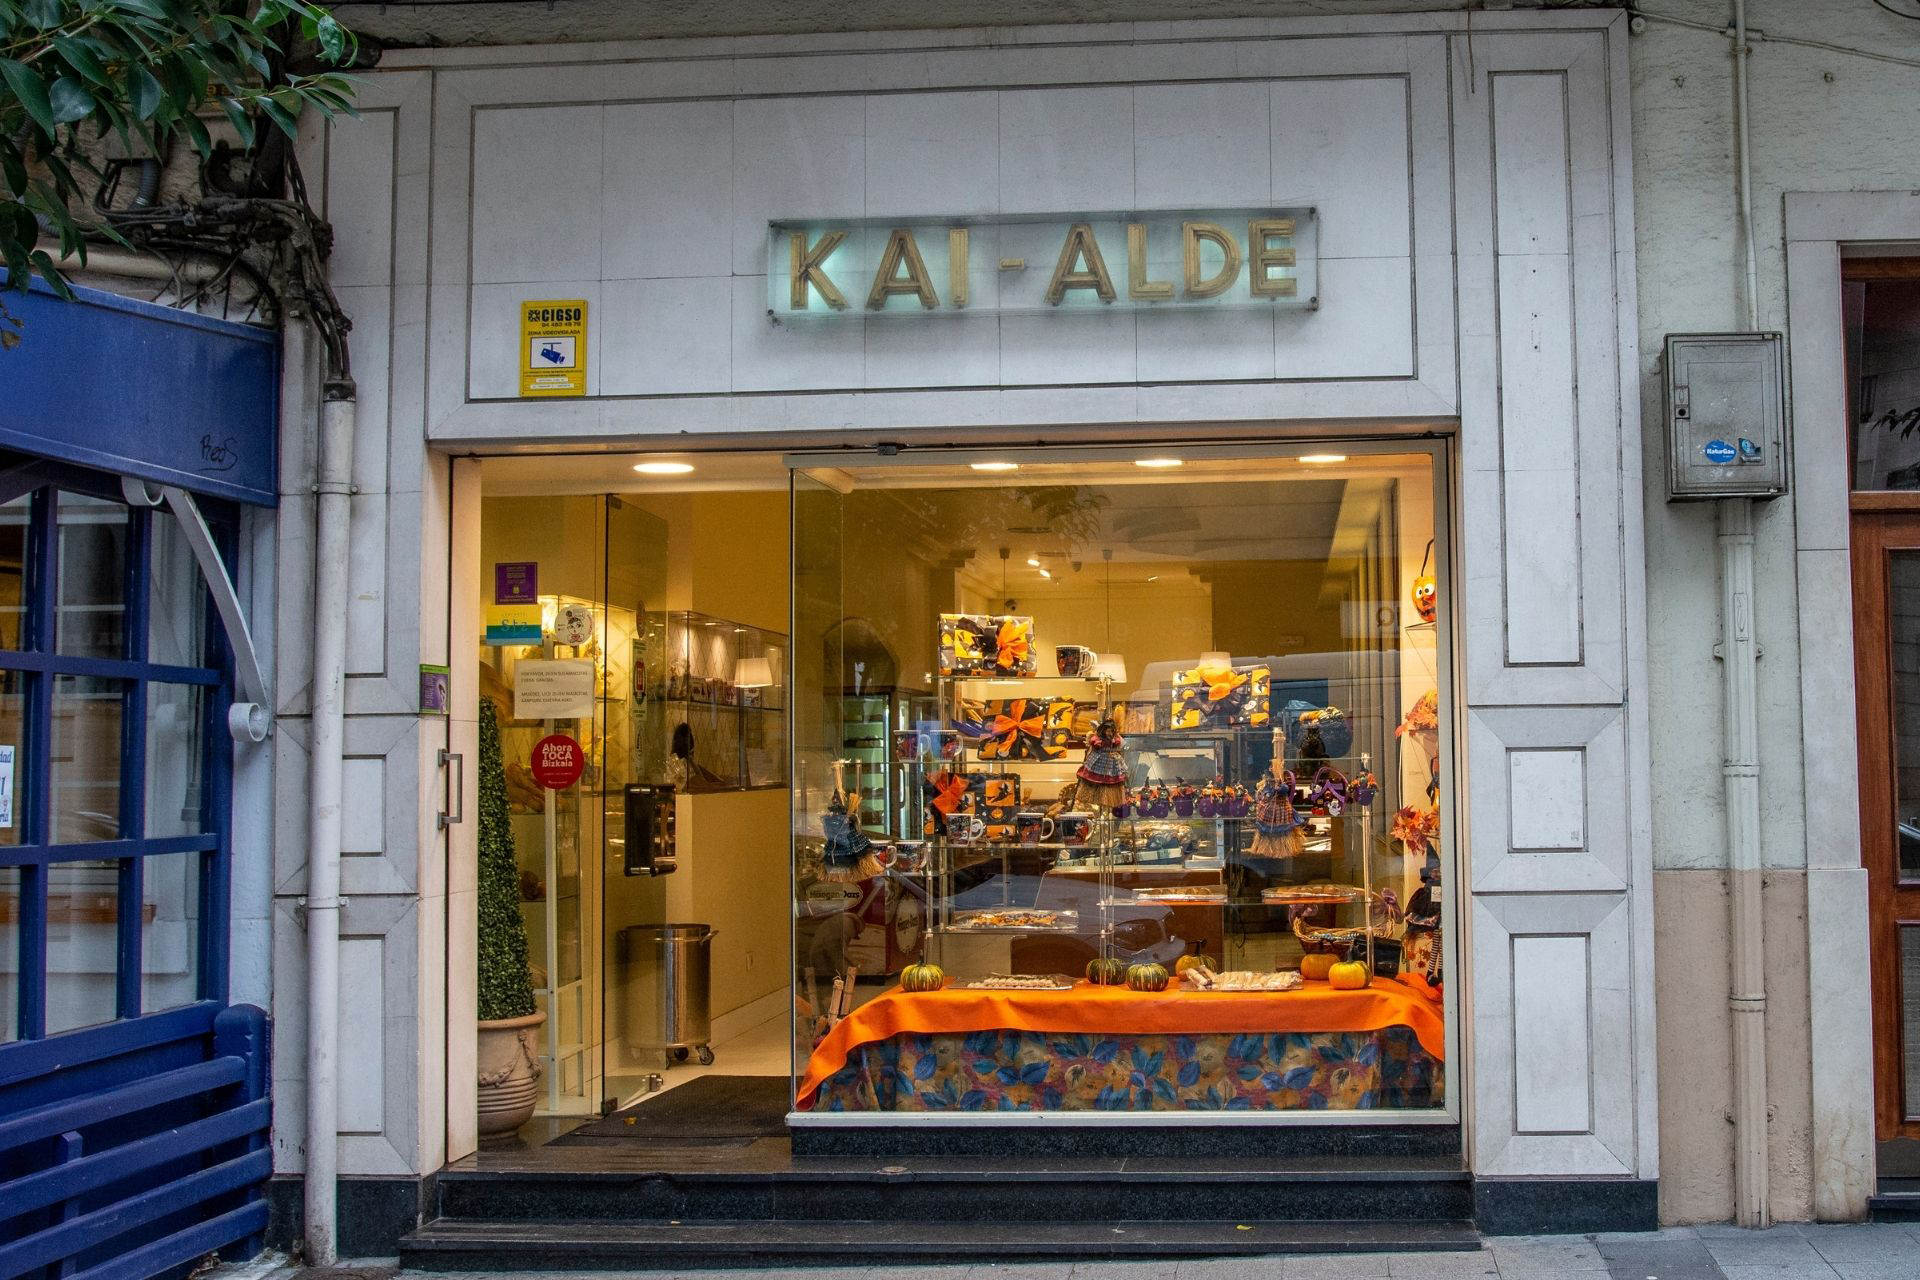 KaiAlde, referencia en el sector de la pastelería y panadería en Bizkaia, con tecnología Ágora